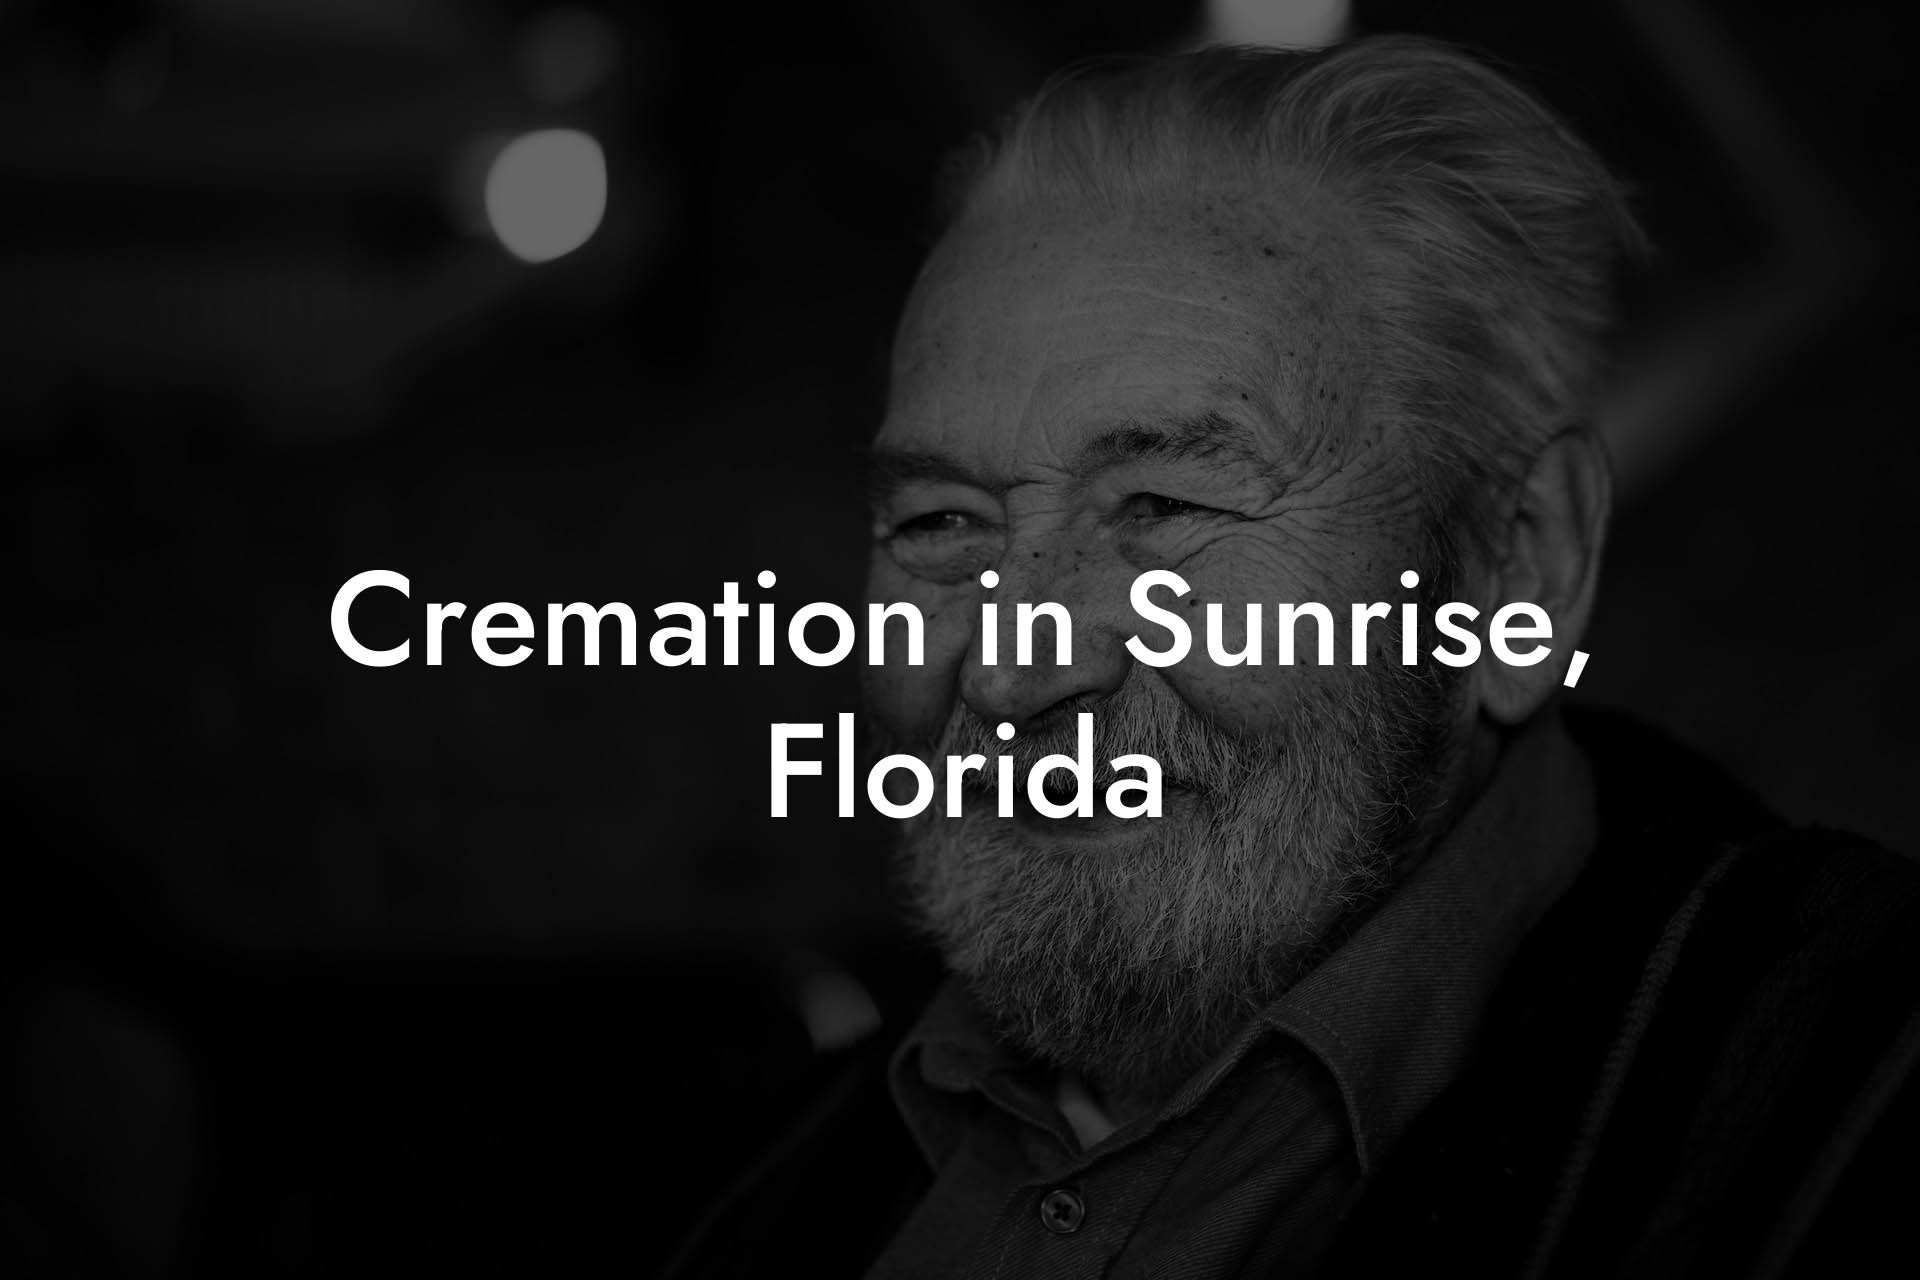 Cremation in Sunrise, Florida